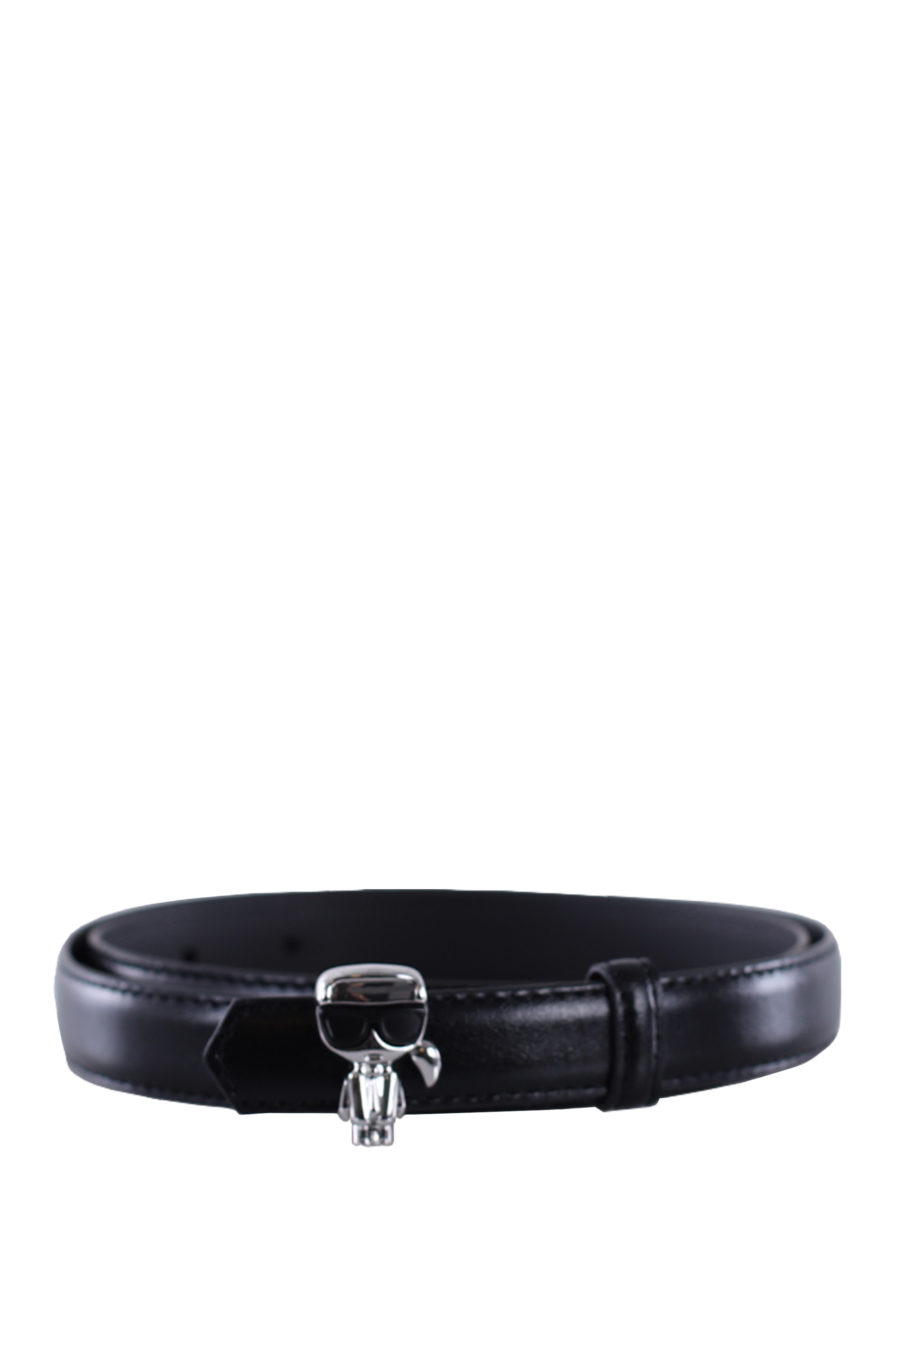 Cinturón negro de hebilla de clavo - IMG 0085